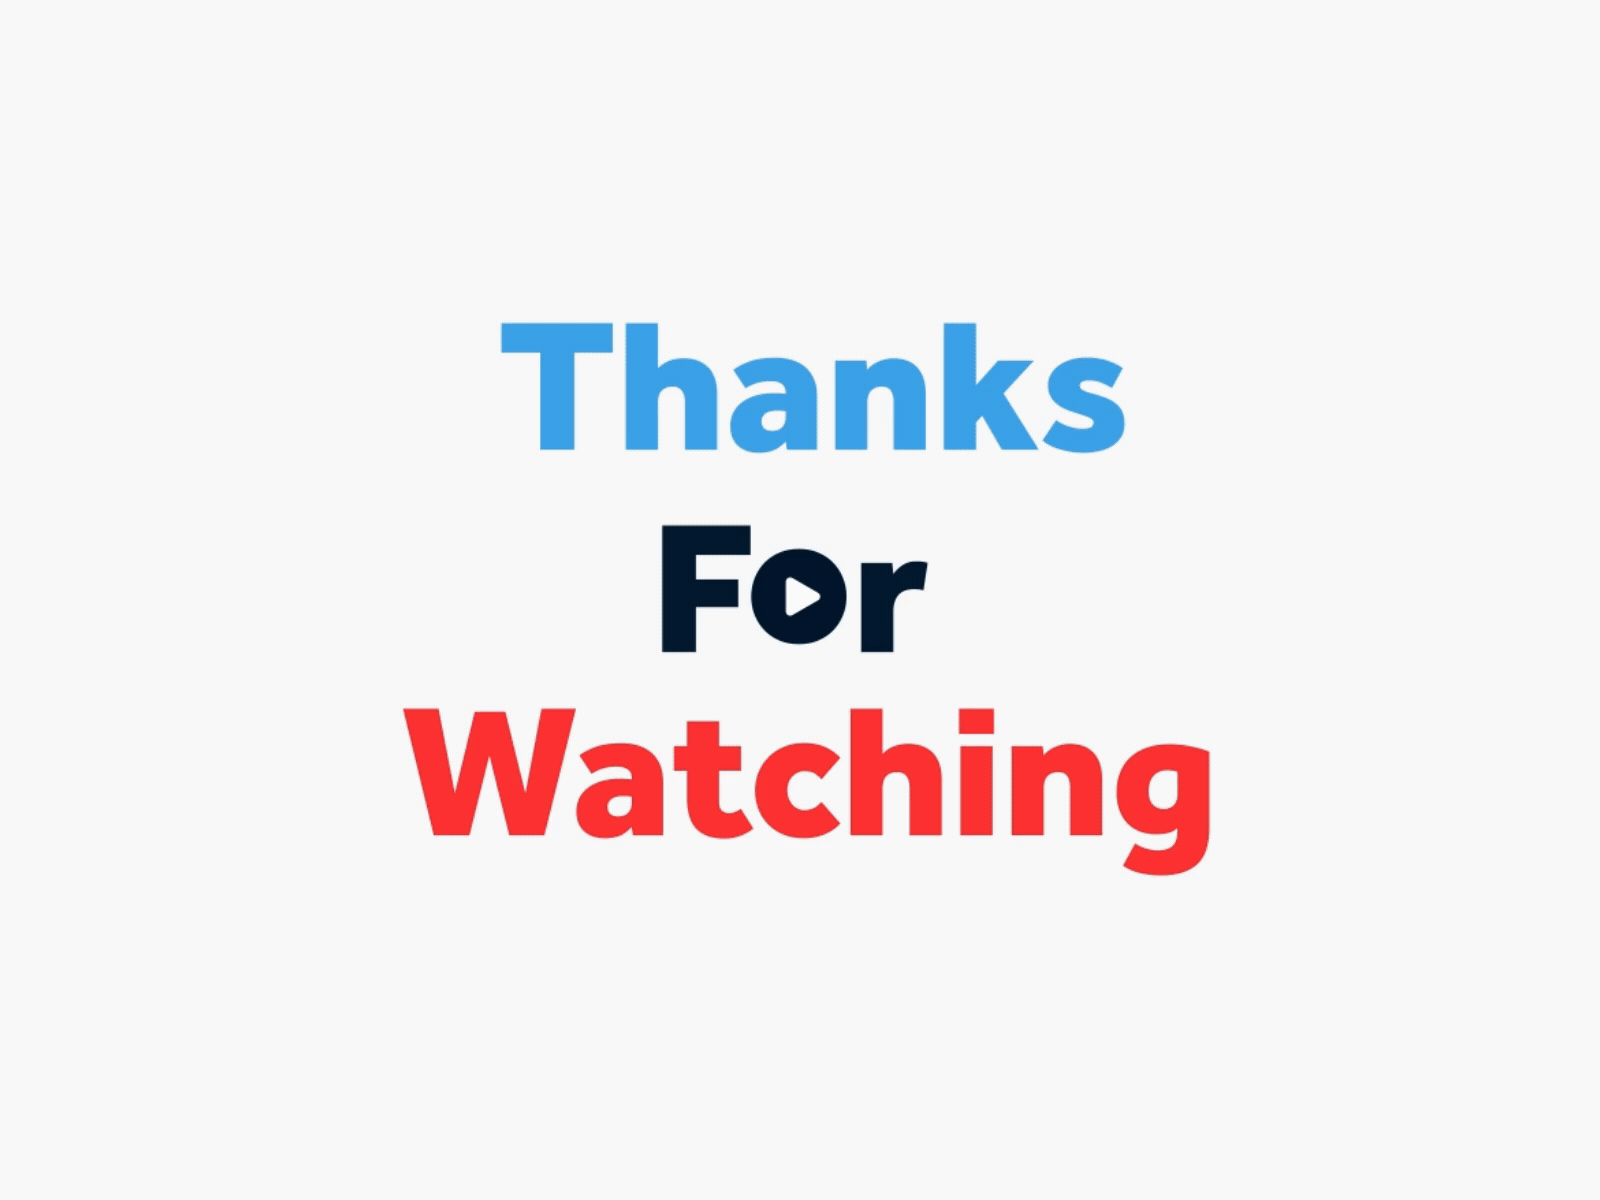 Video trên YouTube Cảm ơn bạn đã xem